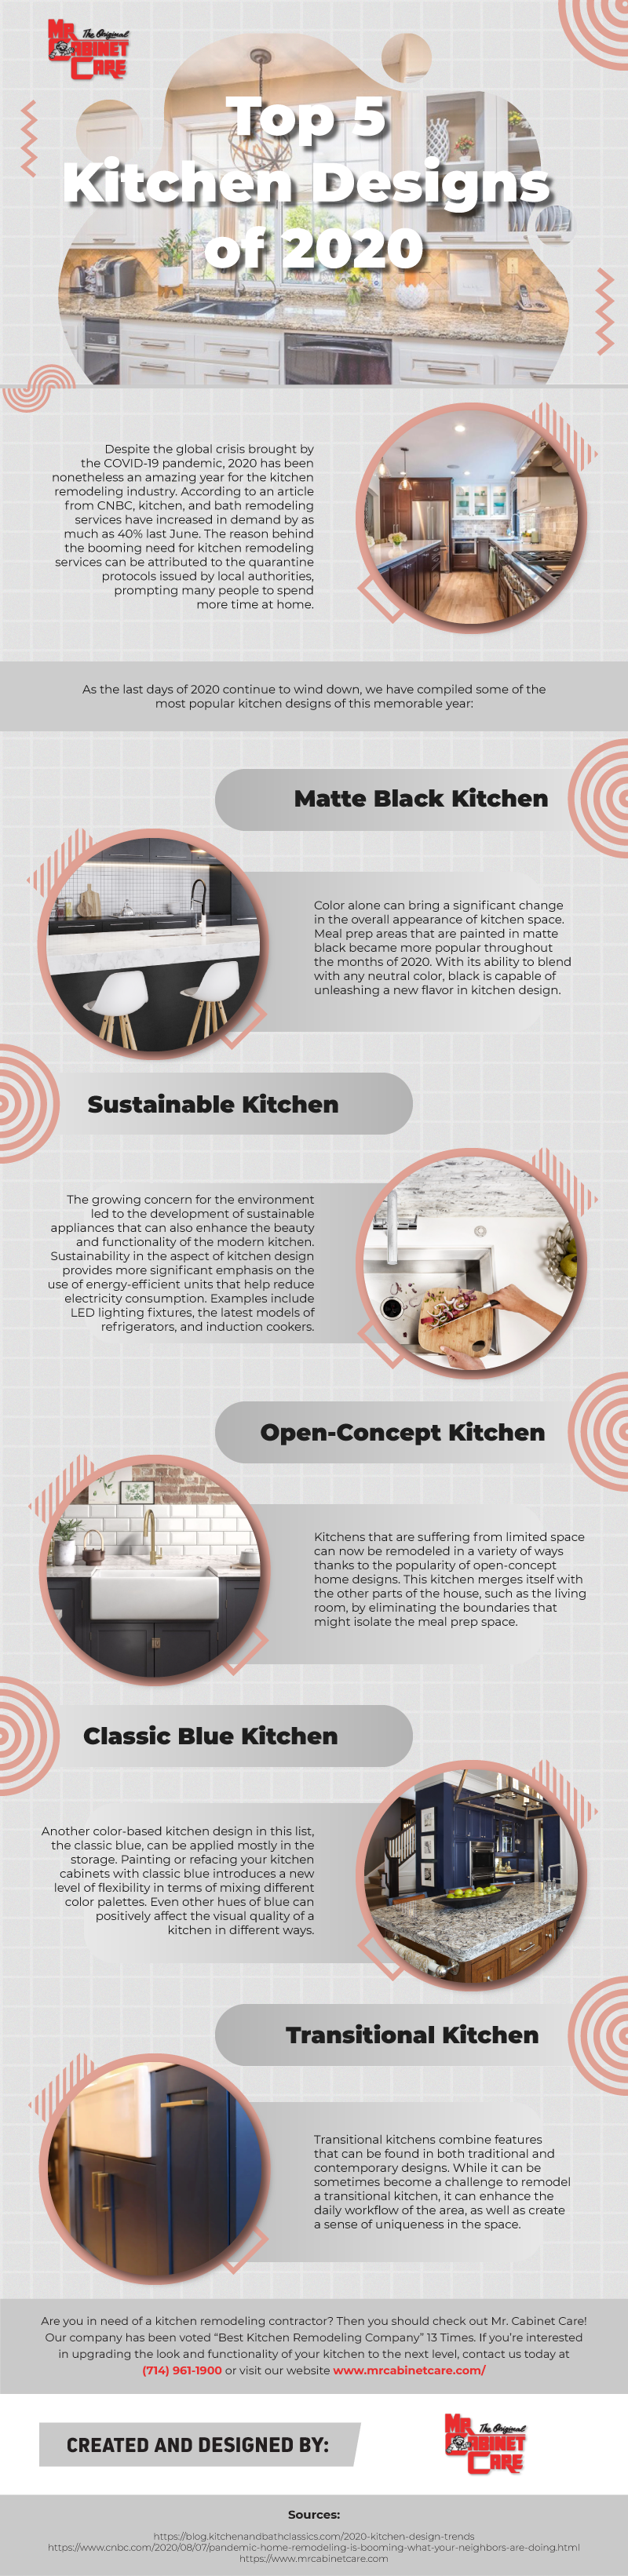 Top Kitchen Designs of 2020